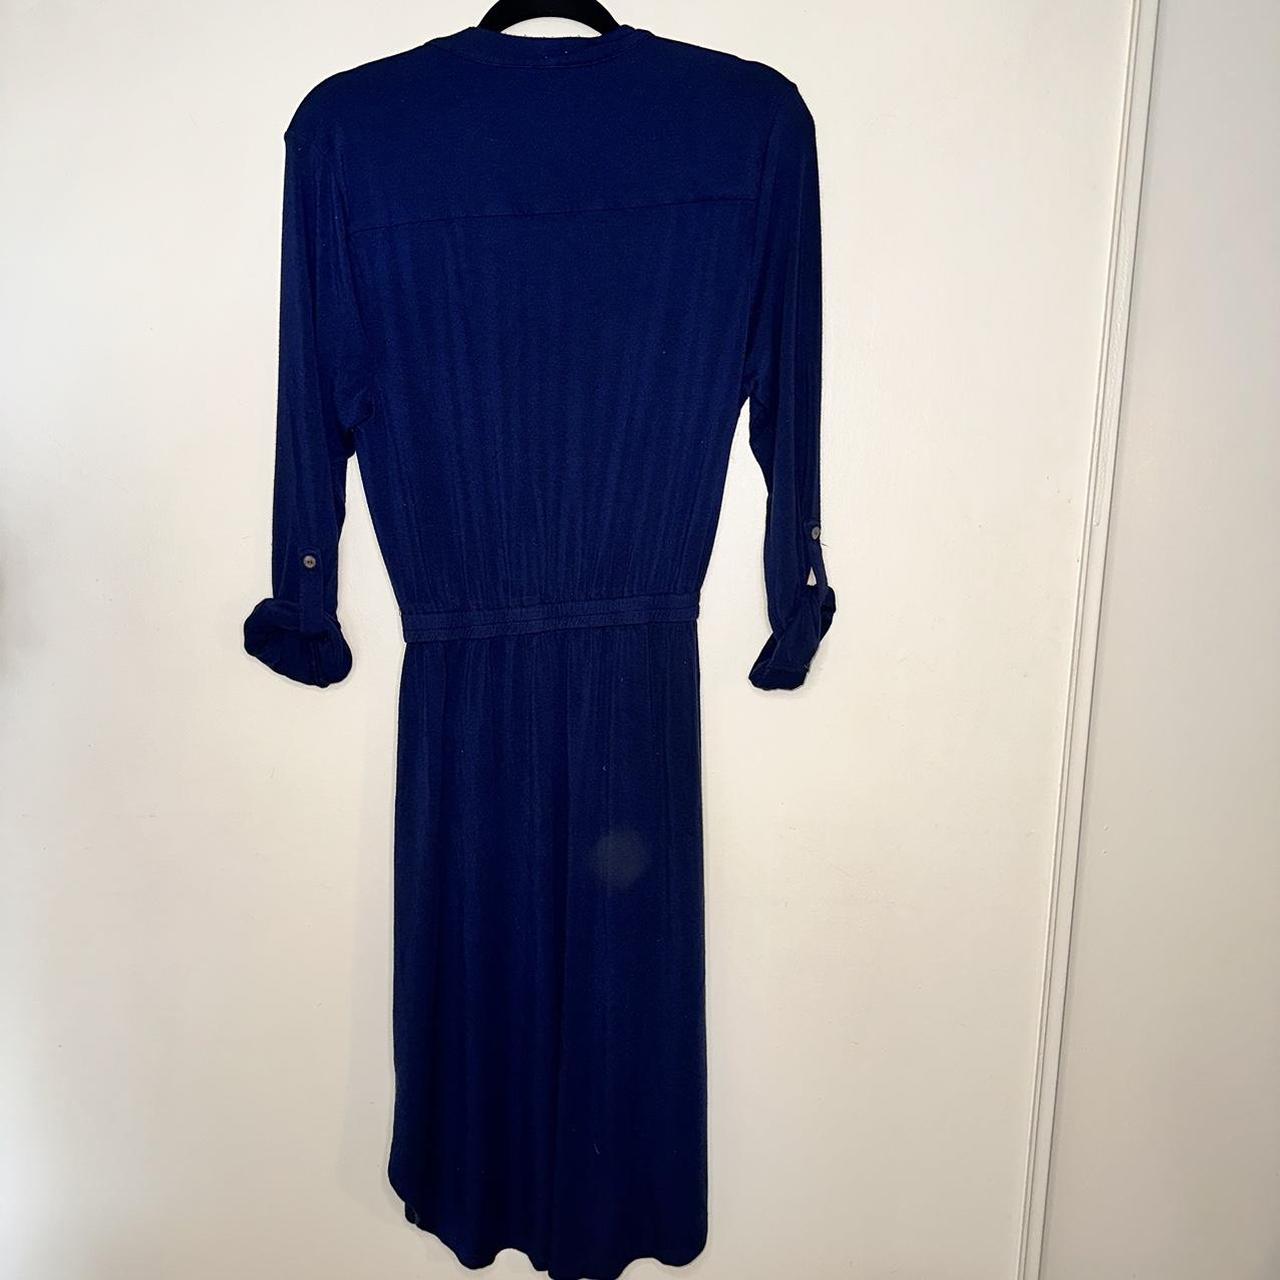 Amour Vert Women's Navy and Blue Dress (3)